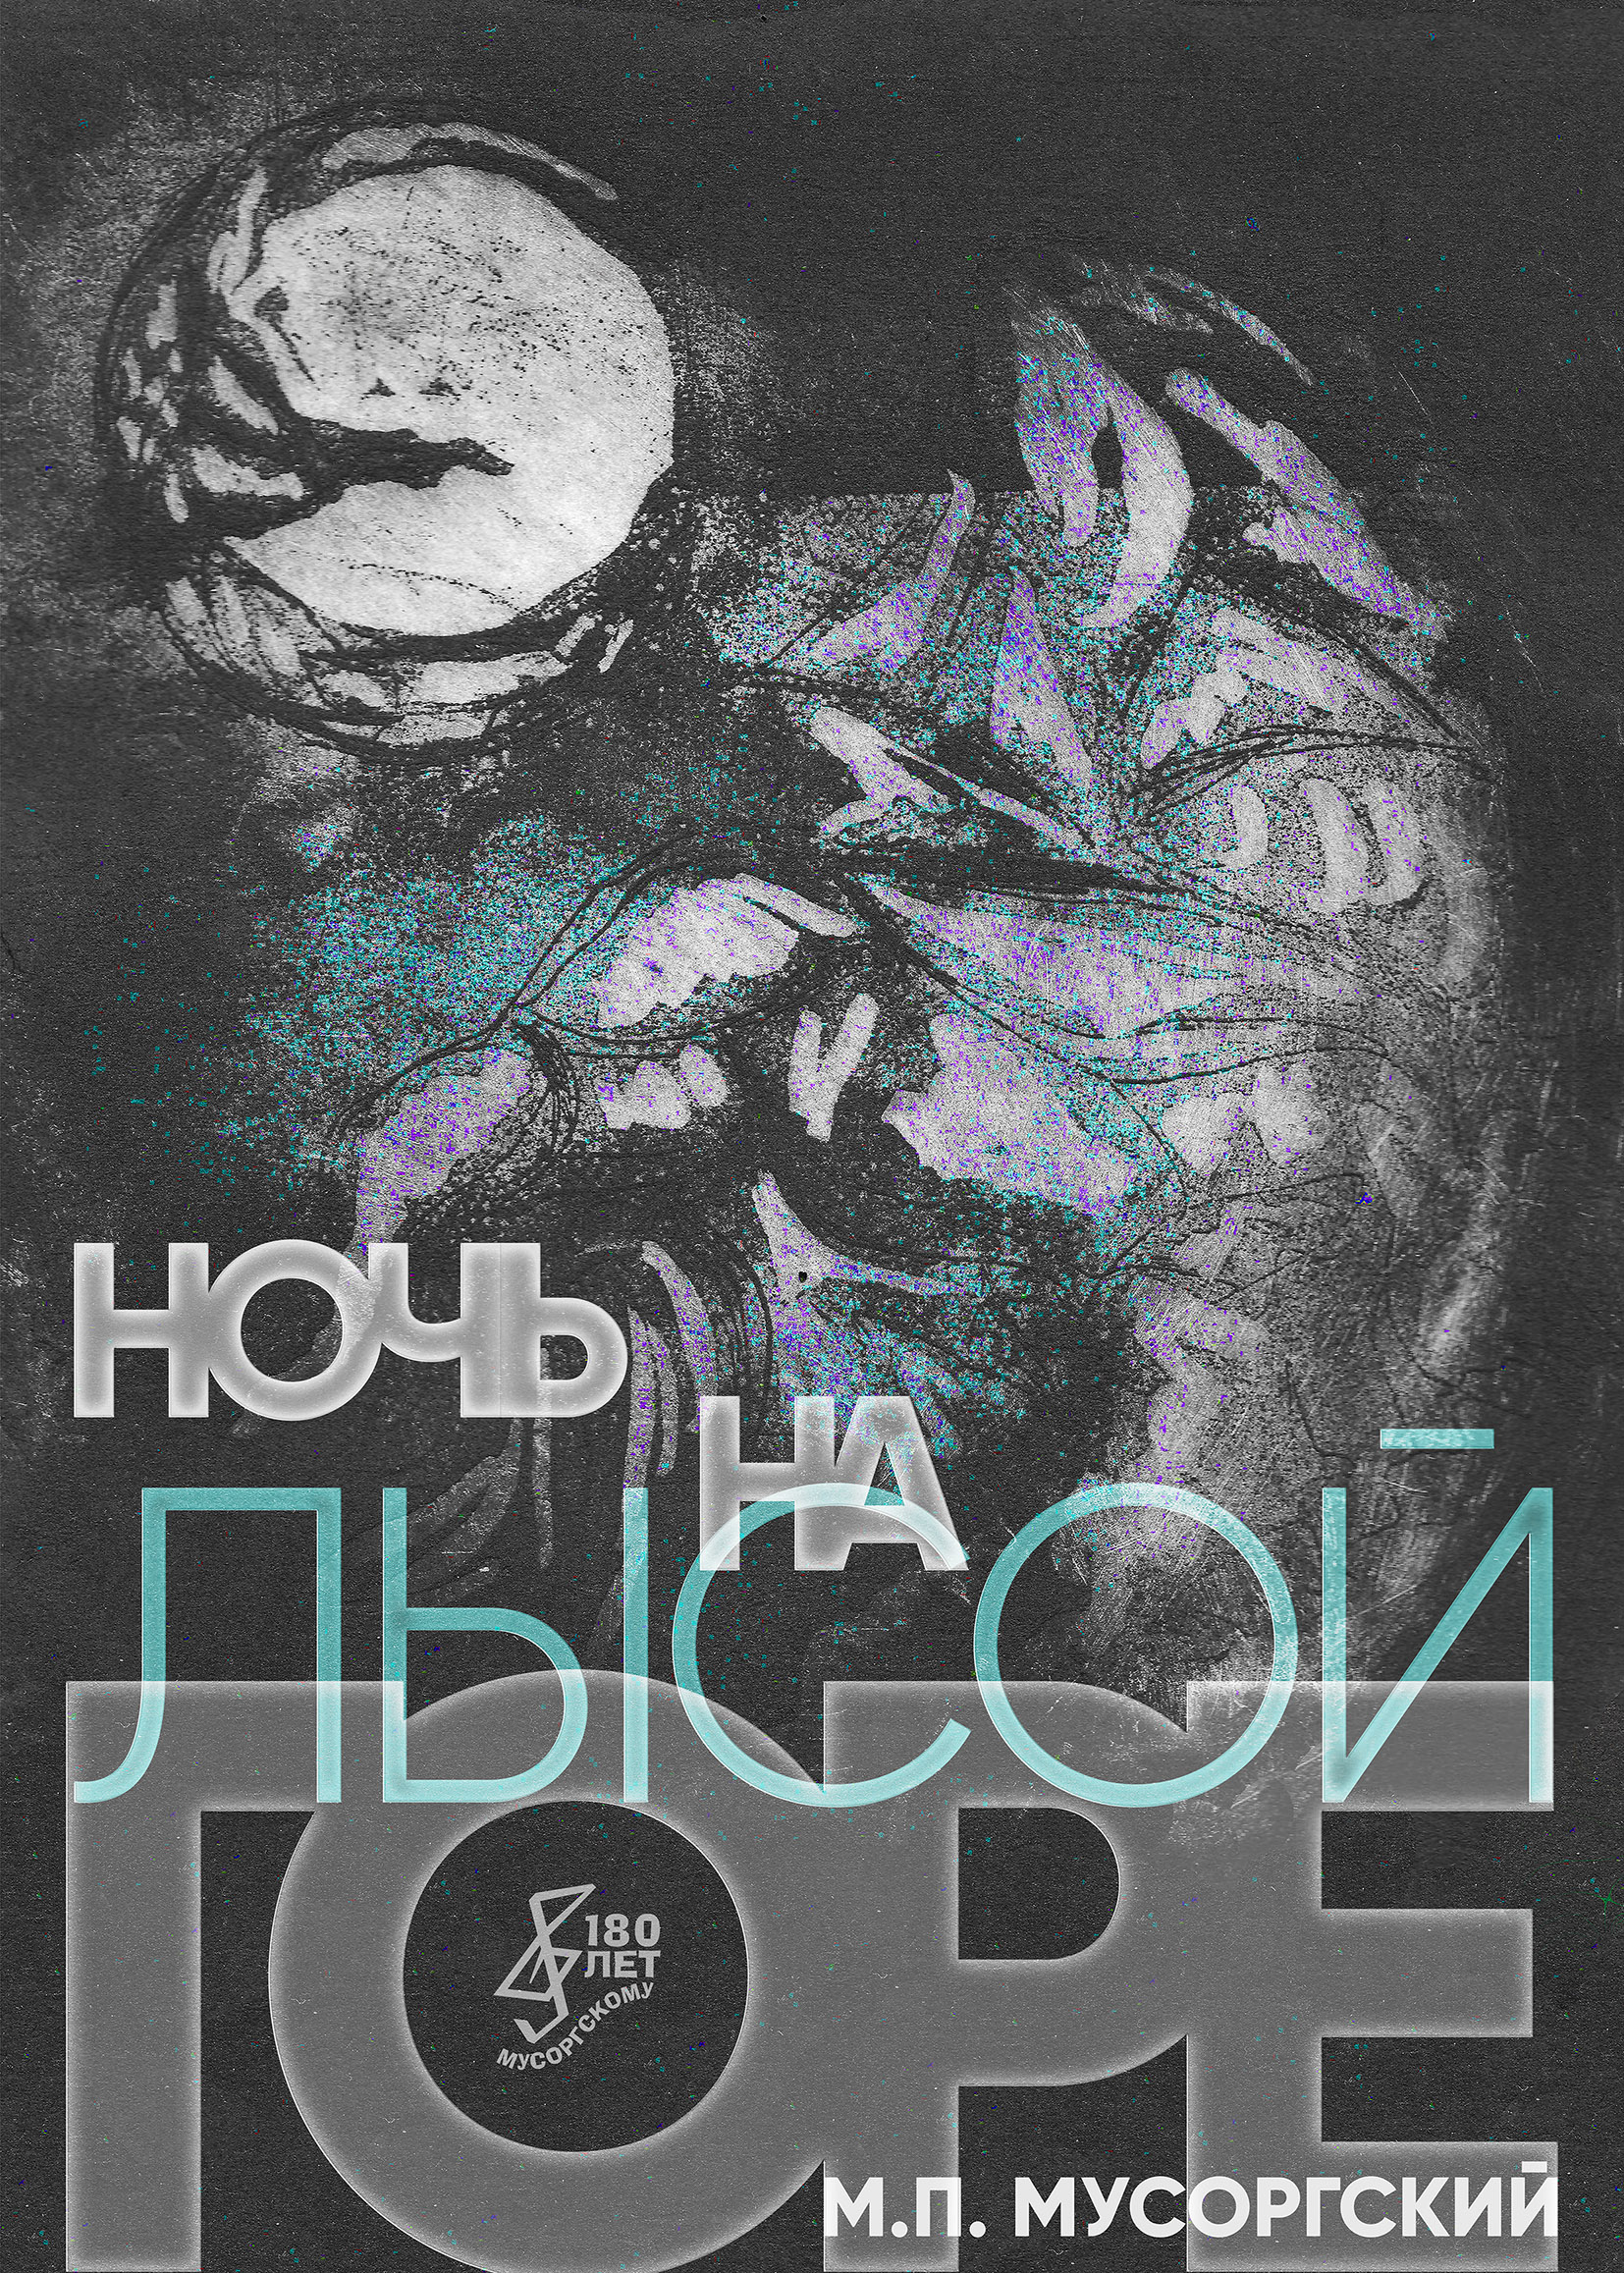 Плакат "Ночь на Лысой горе" Мусоргского